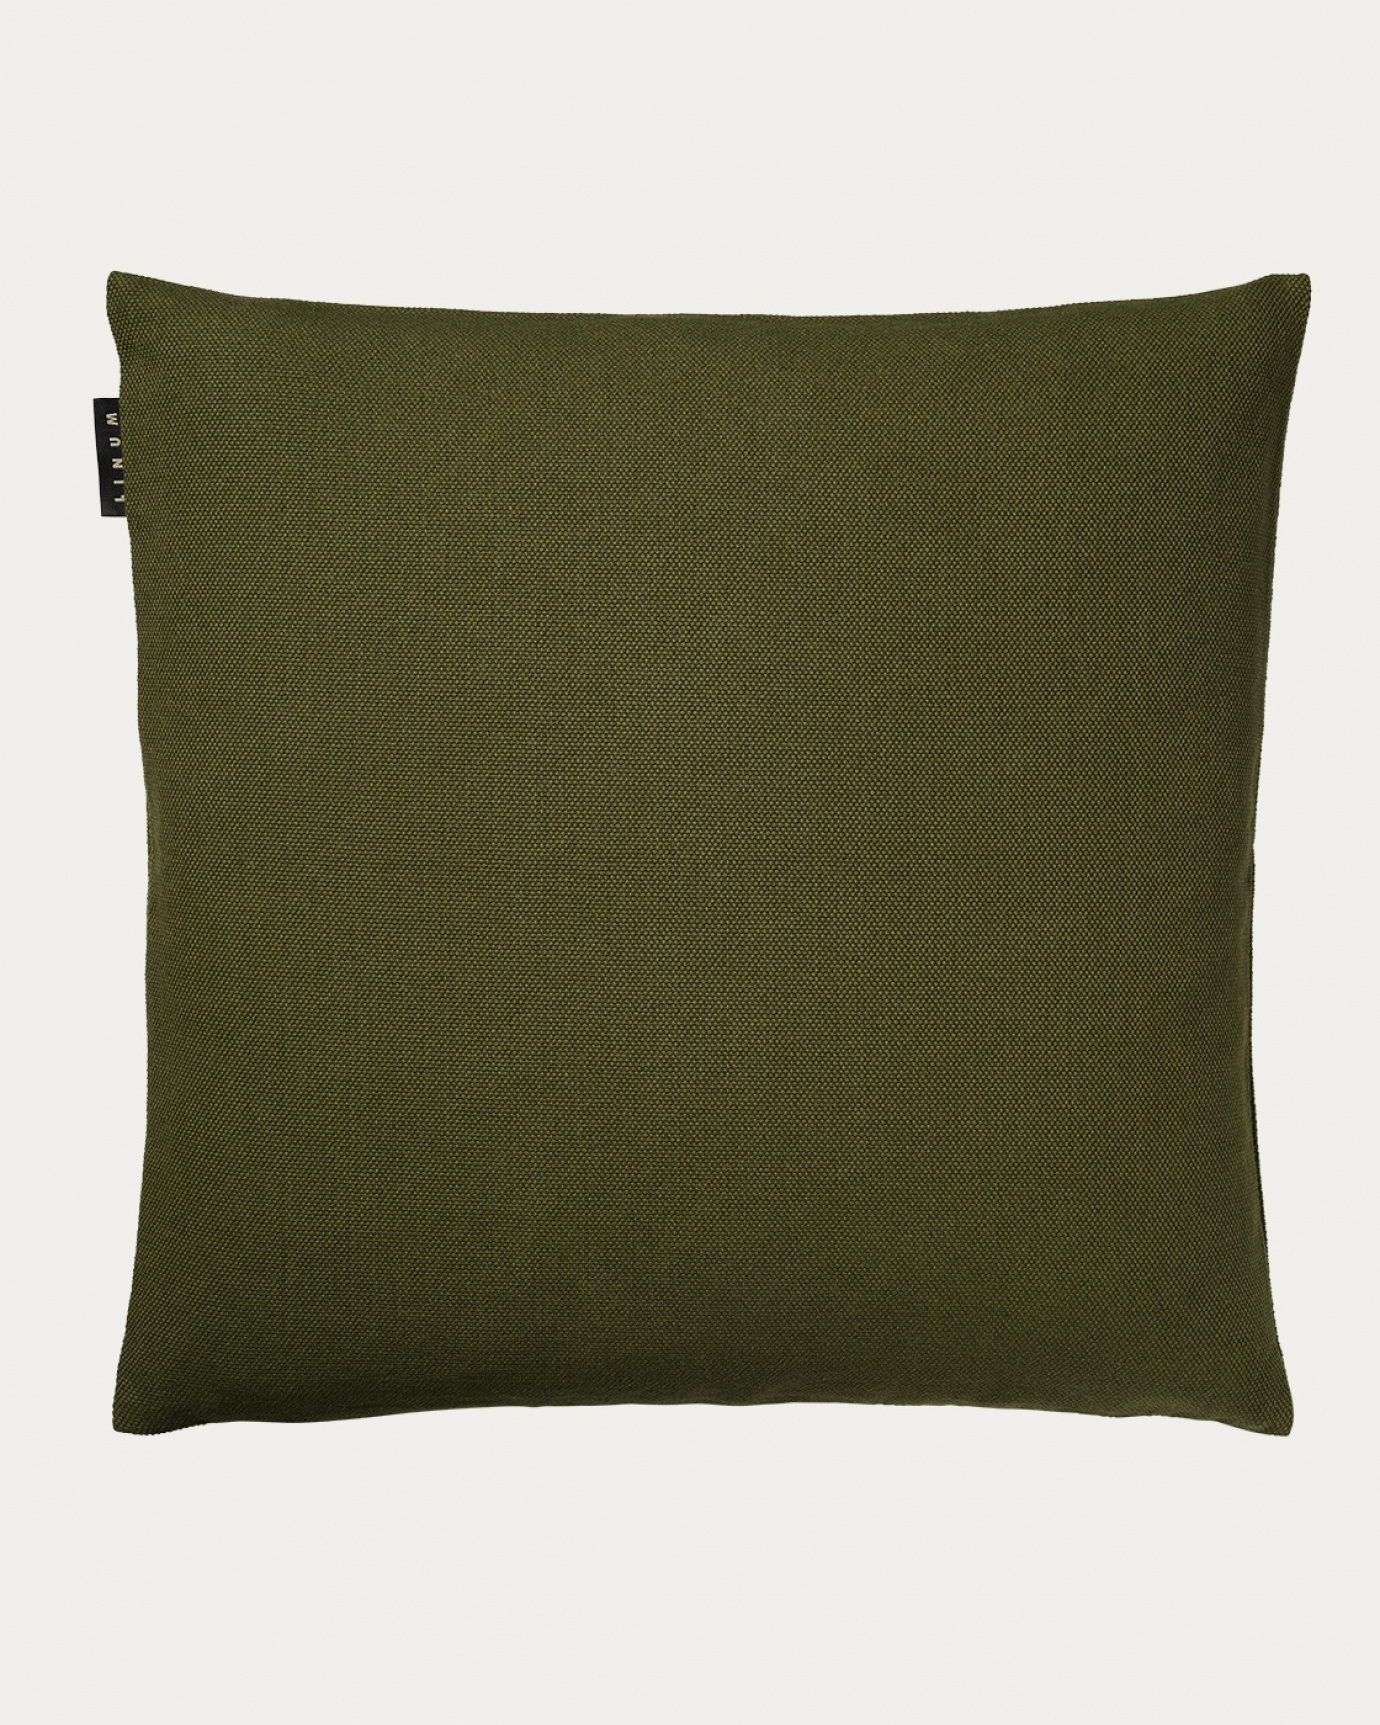 Image du produit housse de coussin PEPPER vert olive foncé en coton doux de LINUM DESIGN. Facile à laver et durable pendant des générations. Taille 60 x 60 cm.